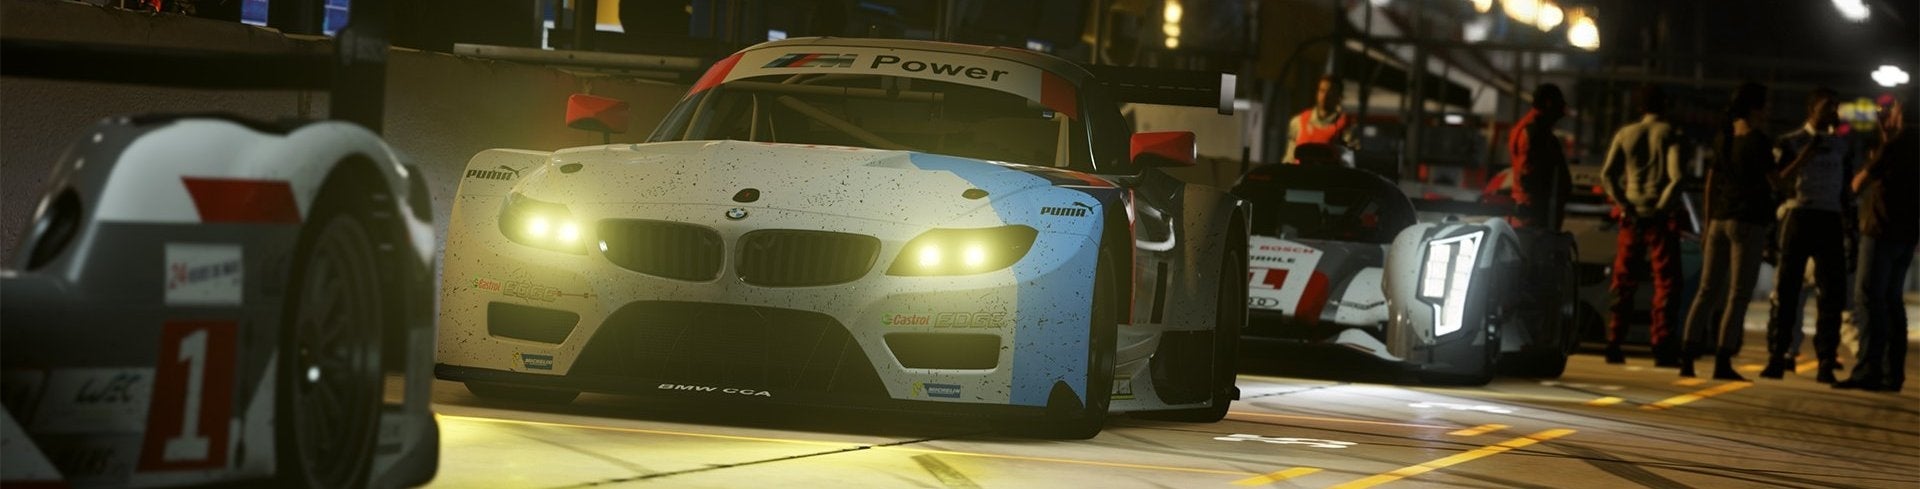 Obrazki dla Forza Motorsport 6 - Recenzja